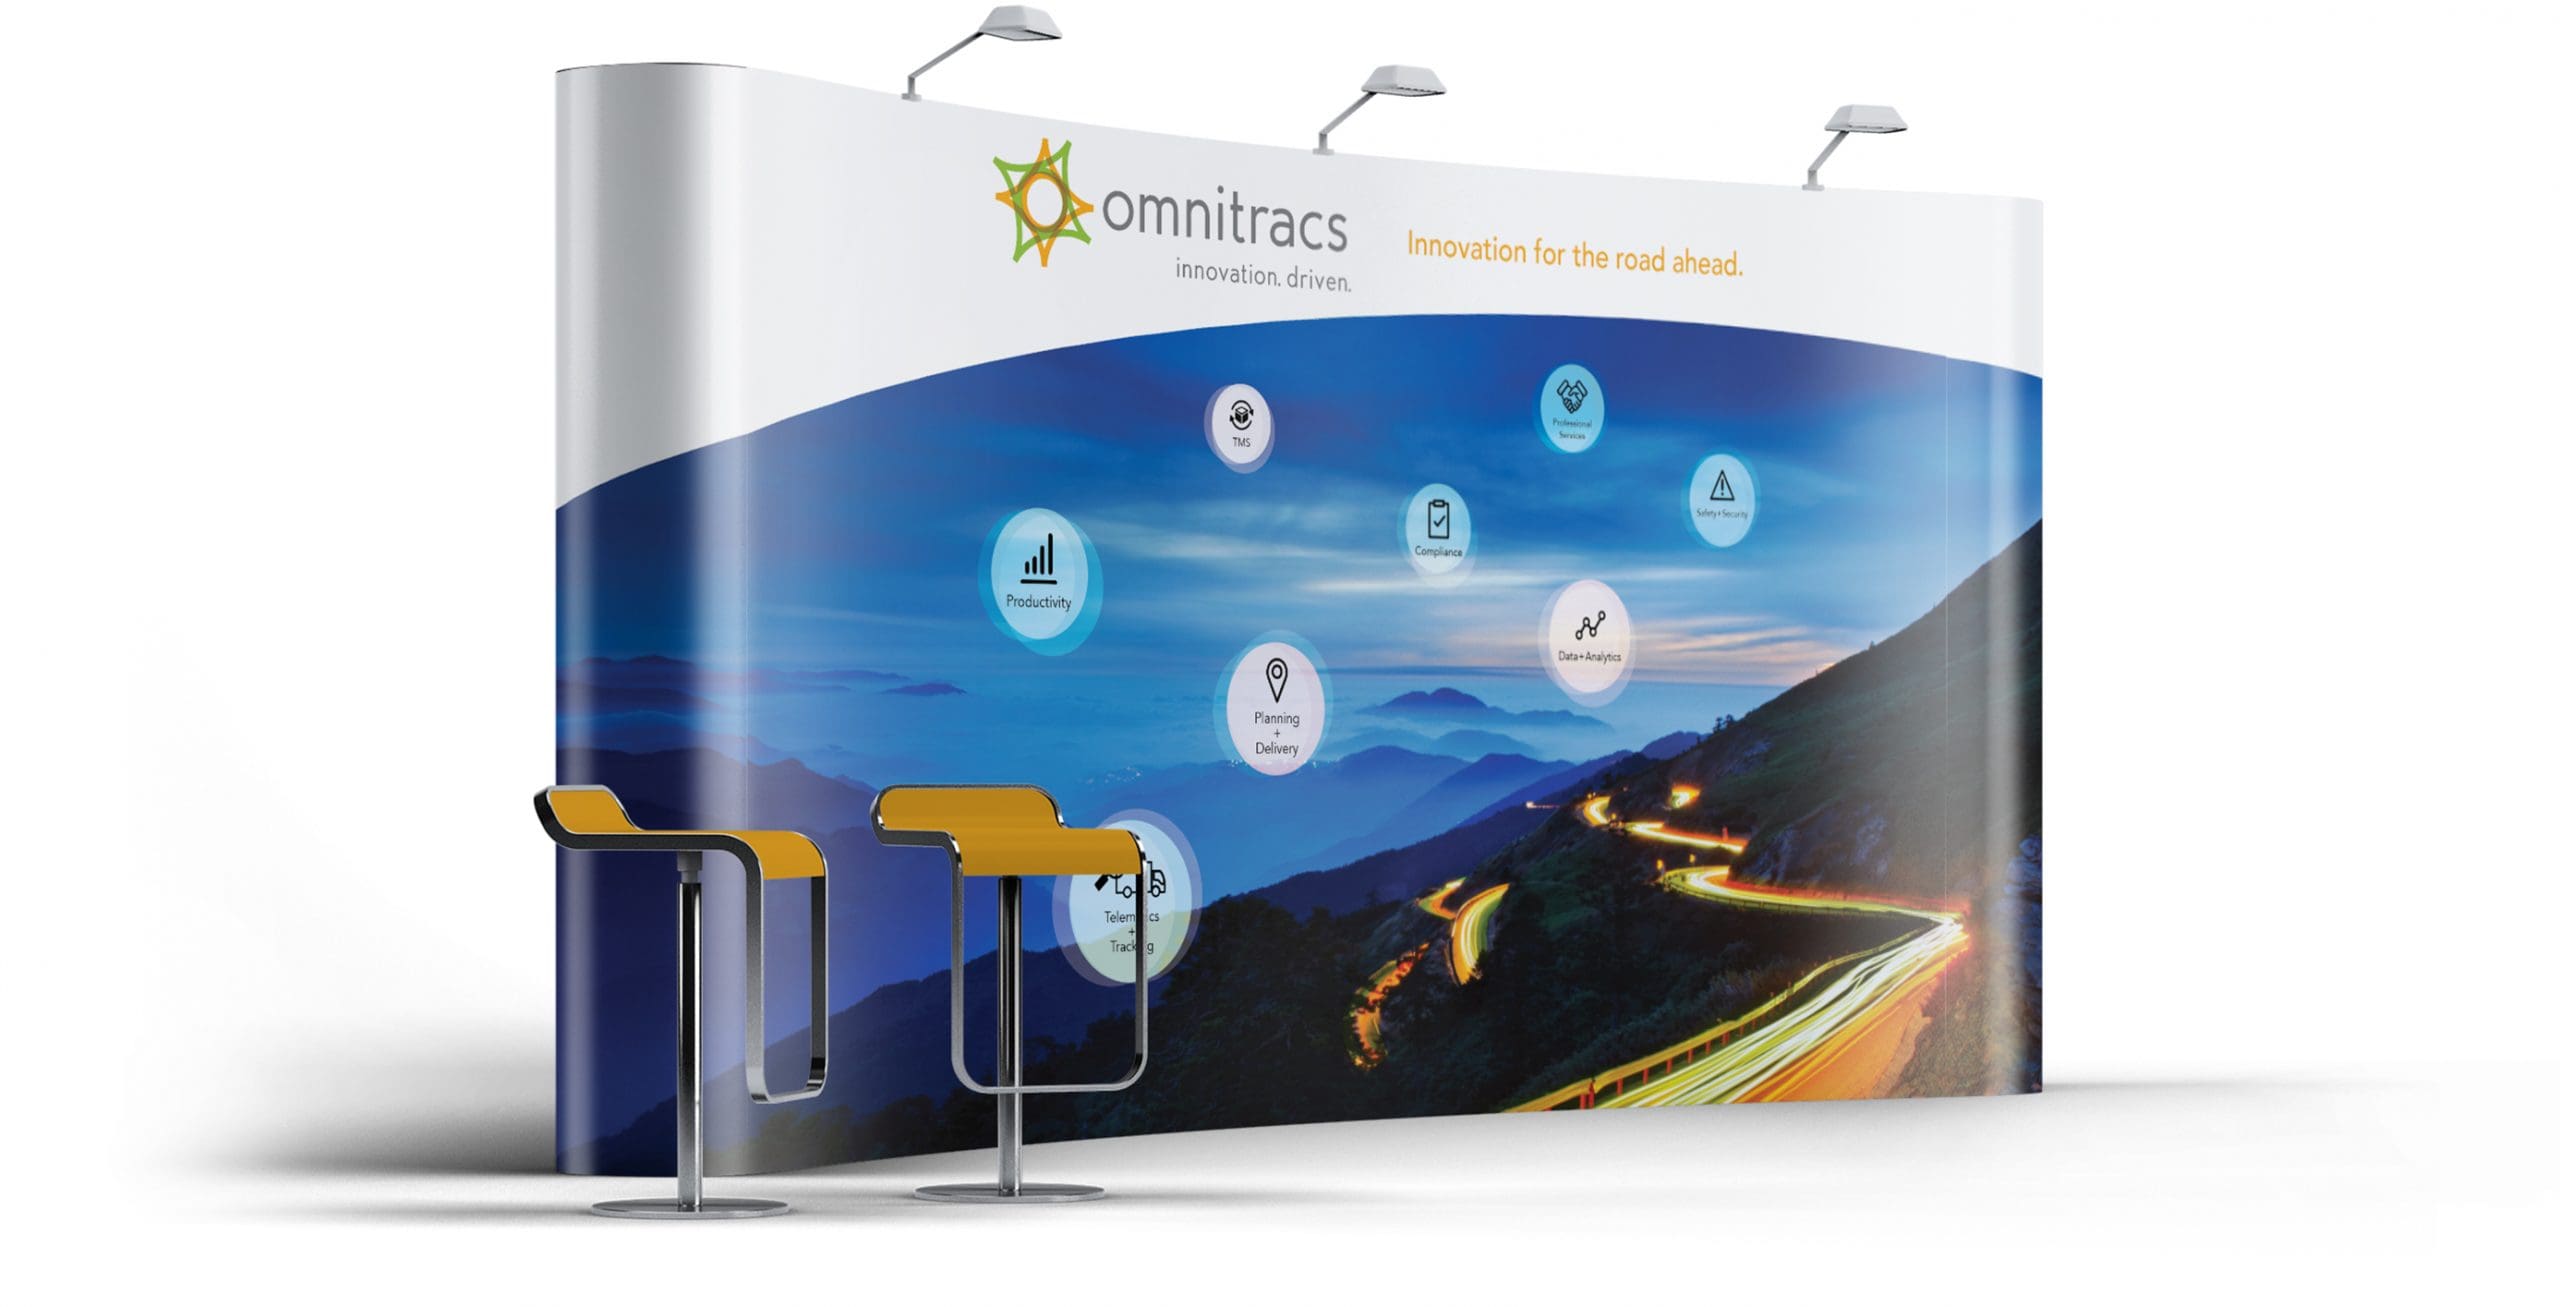 Logistics marketing - Omnitracs